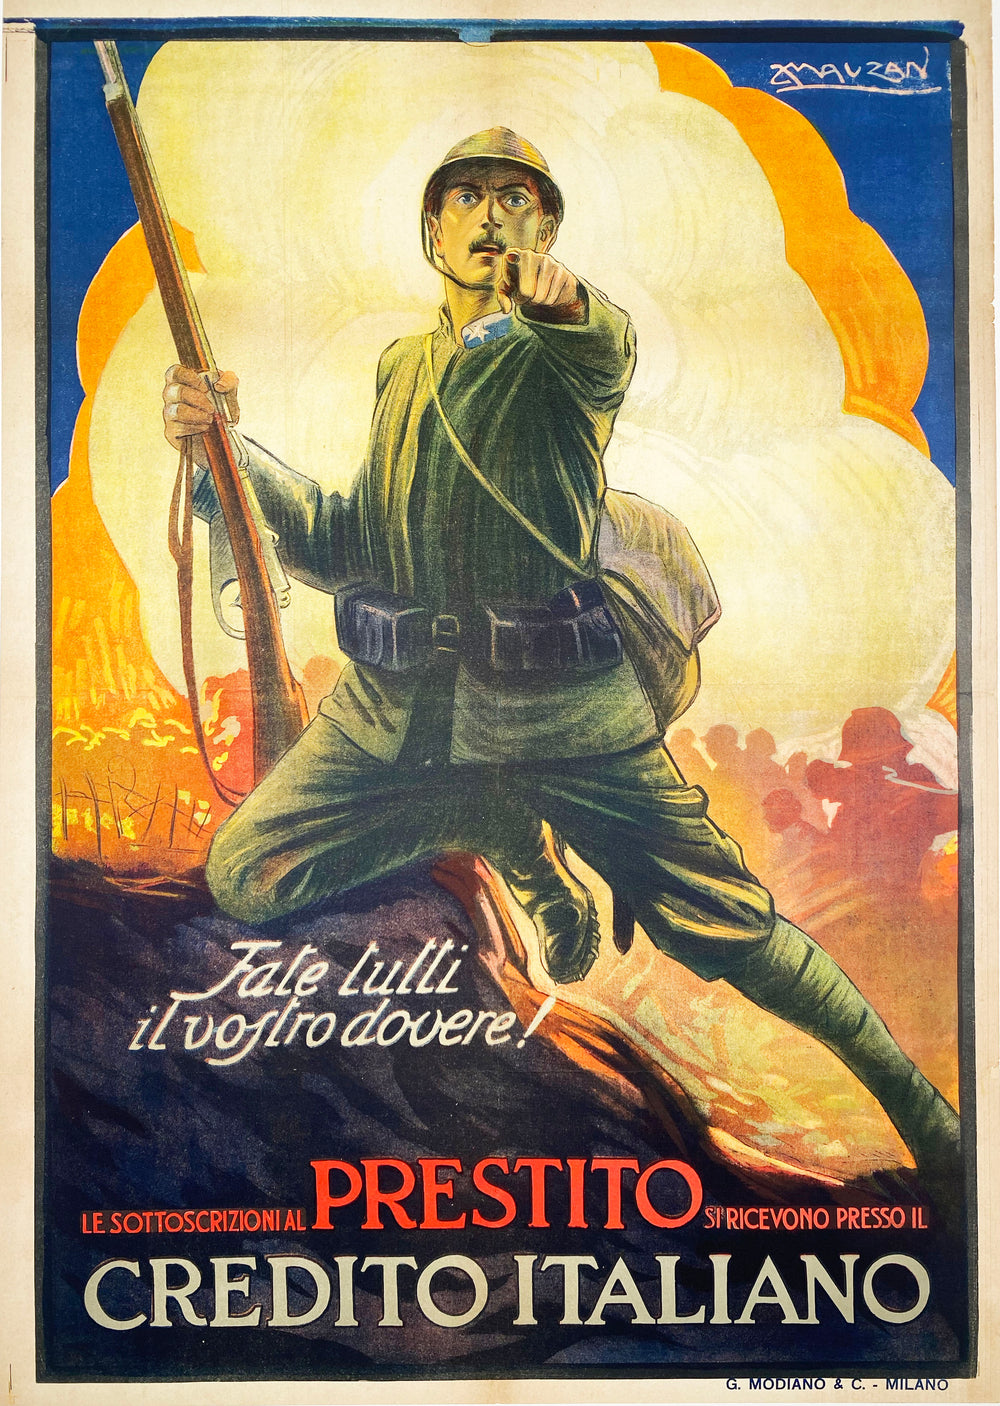 Prestito Credito Italiano - Vintage Italian Bond poster by Mauzan 1917